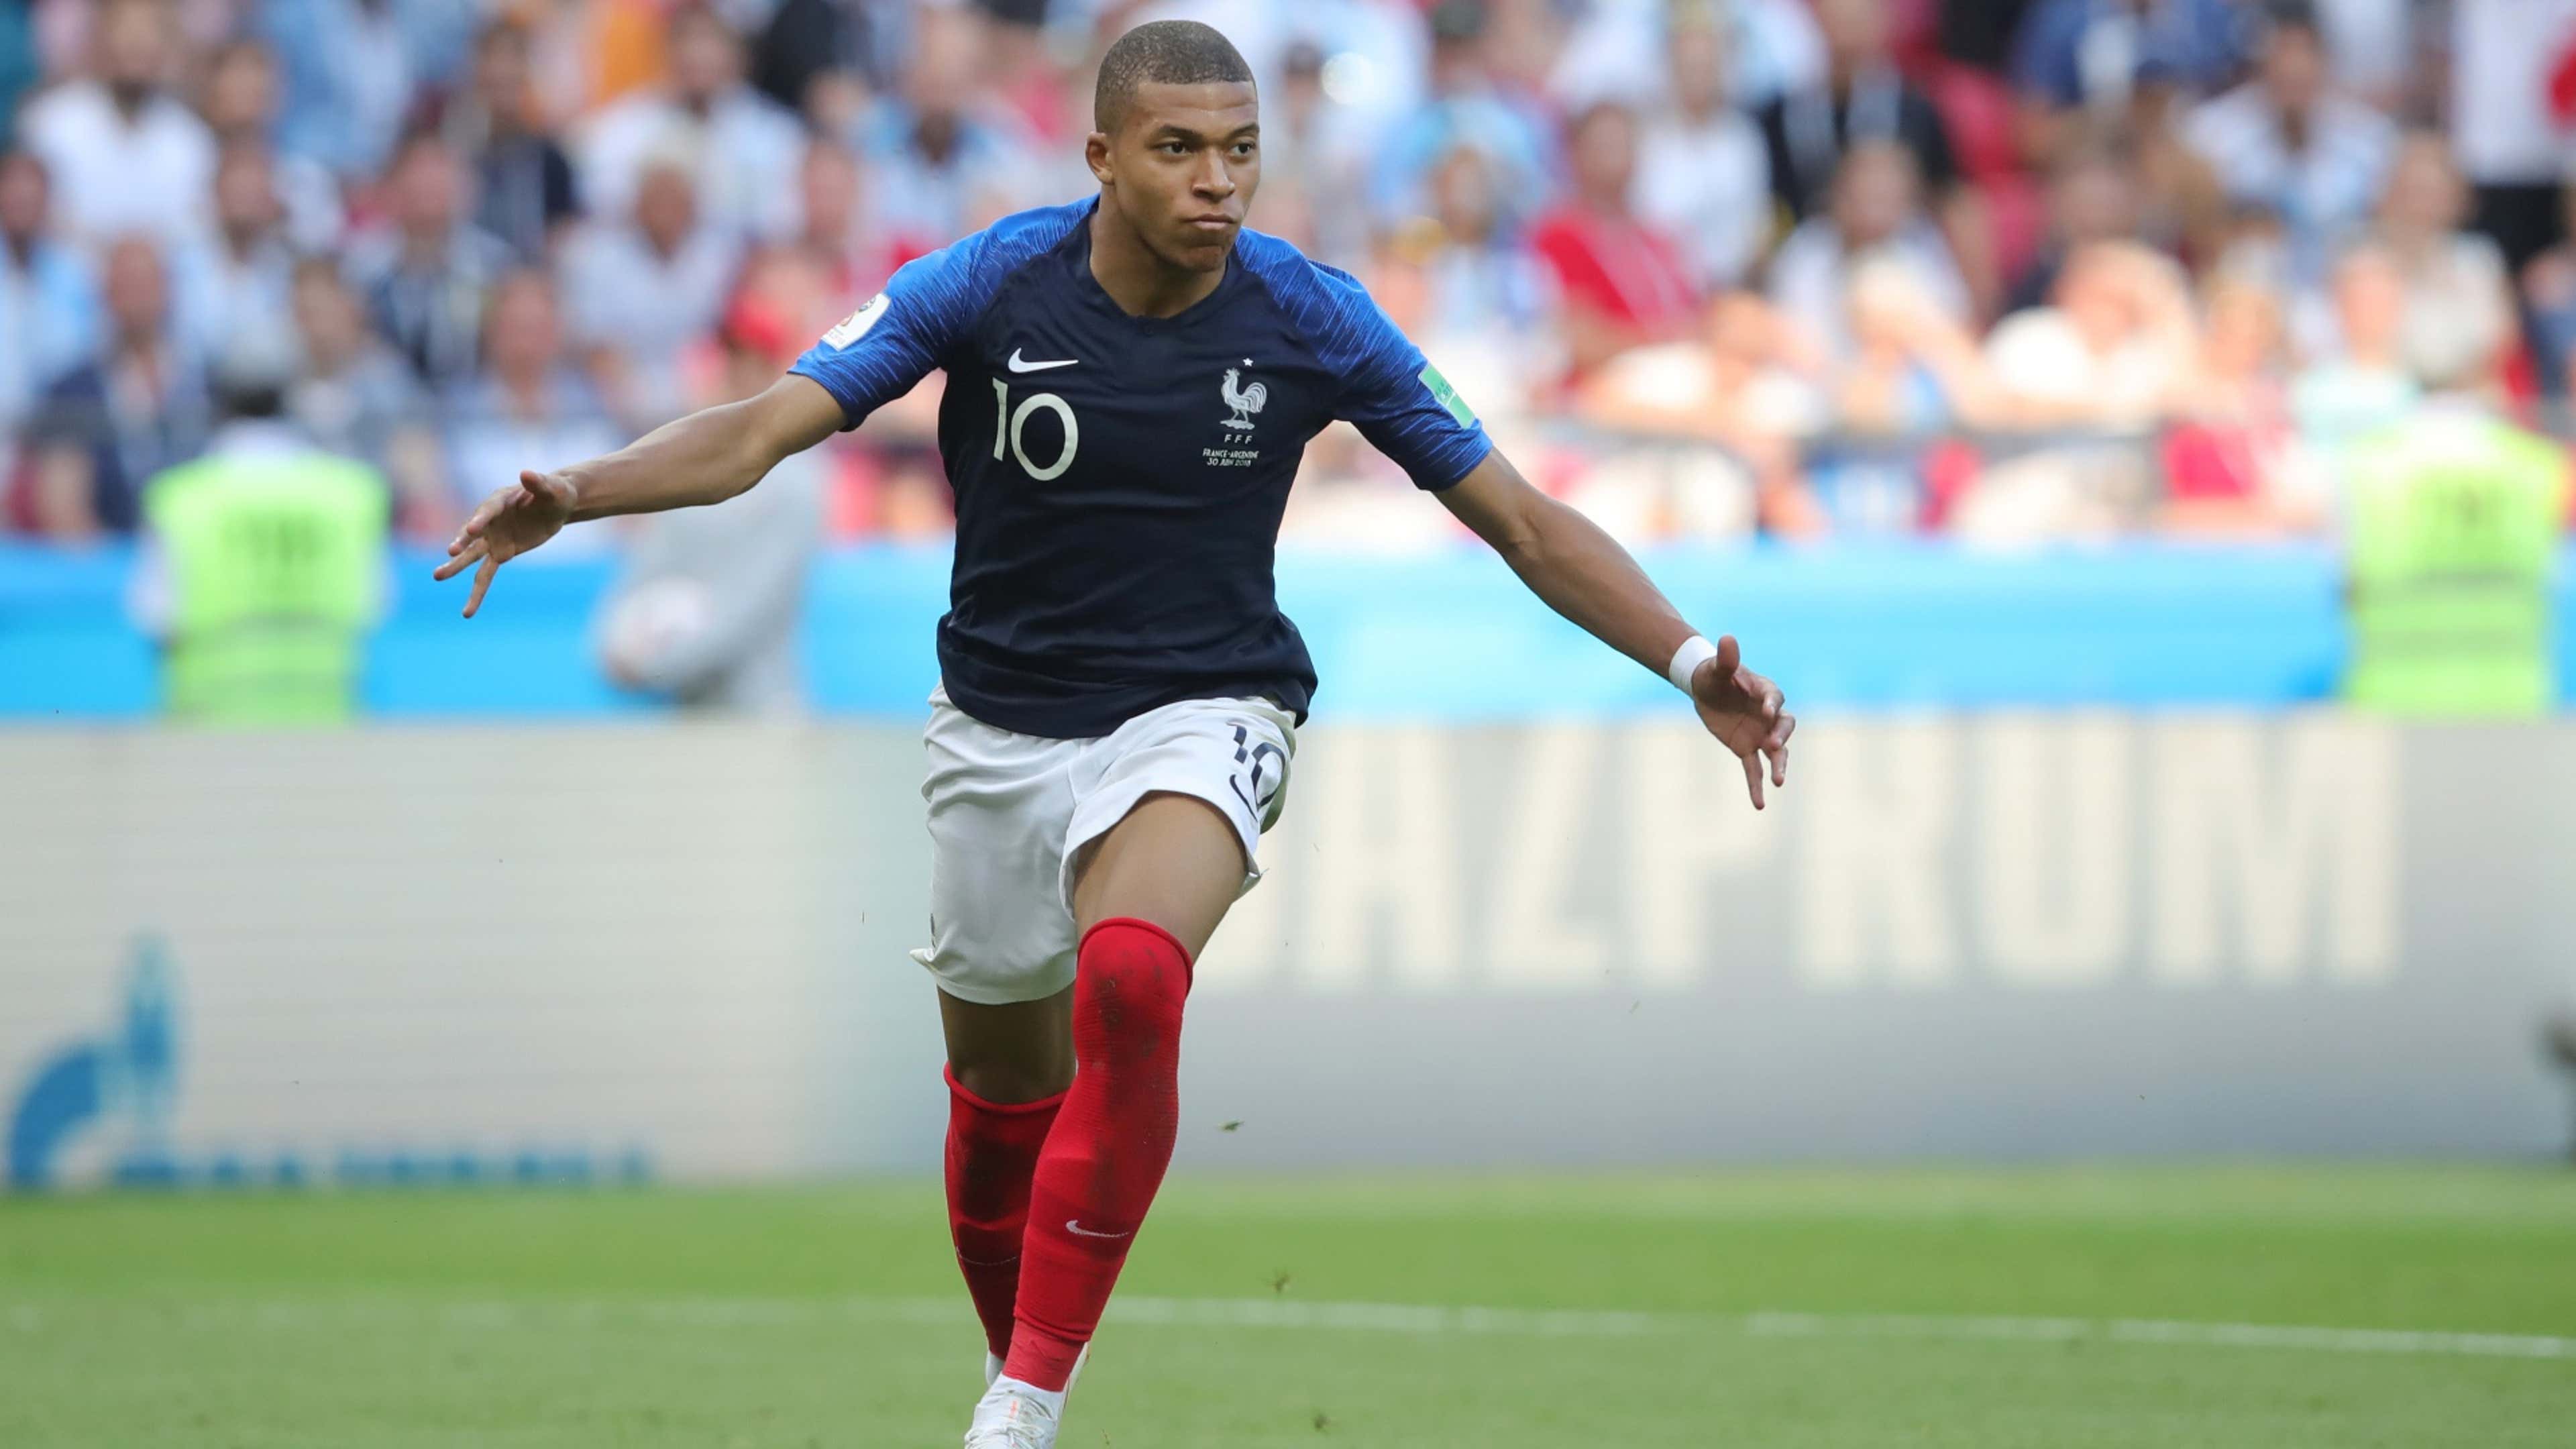 França x Croácia na final da Copa do Mundo de 2018